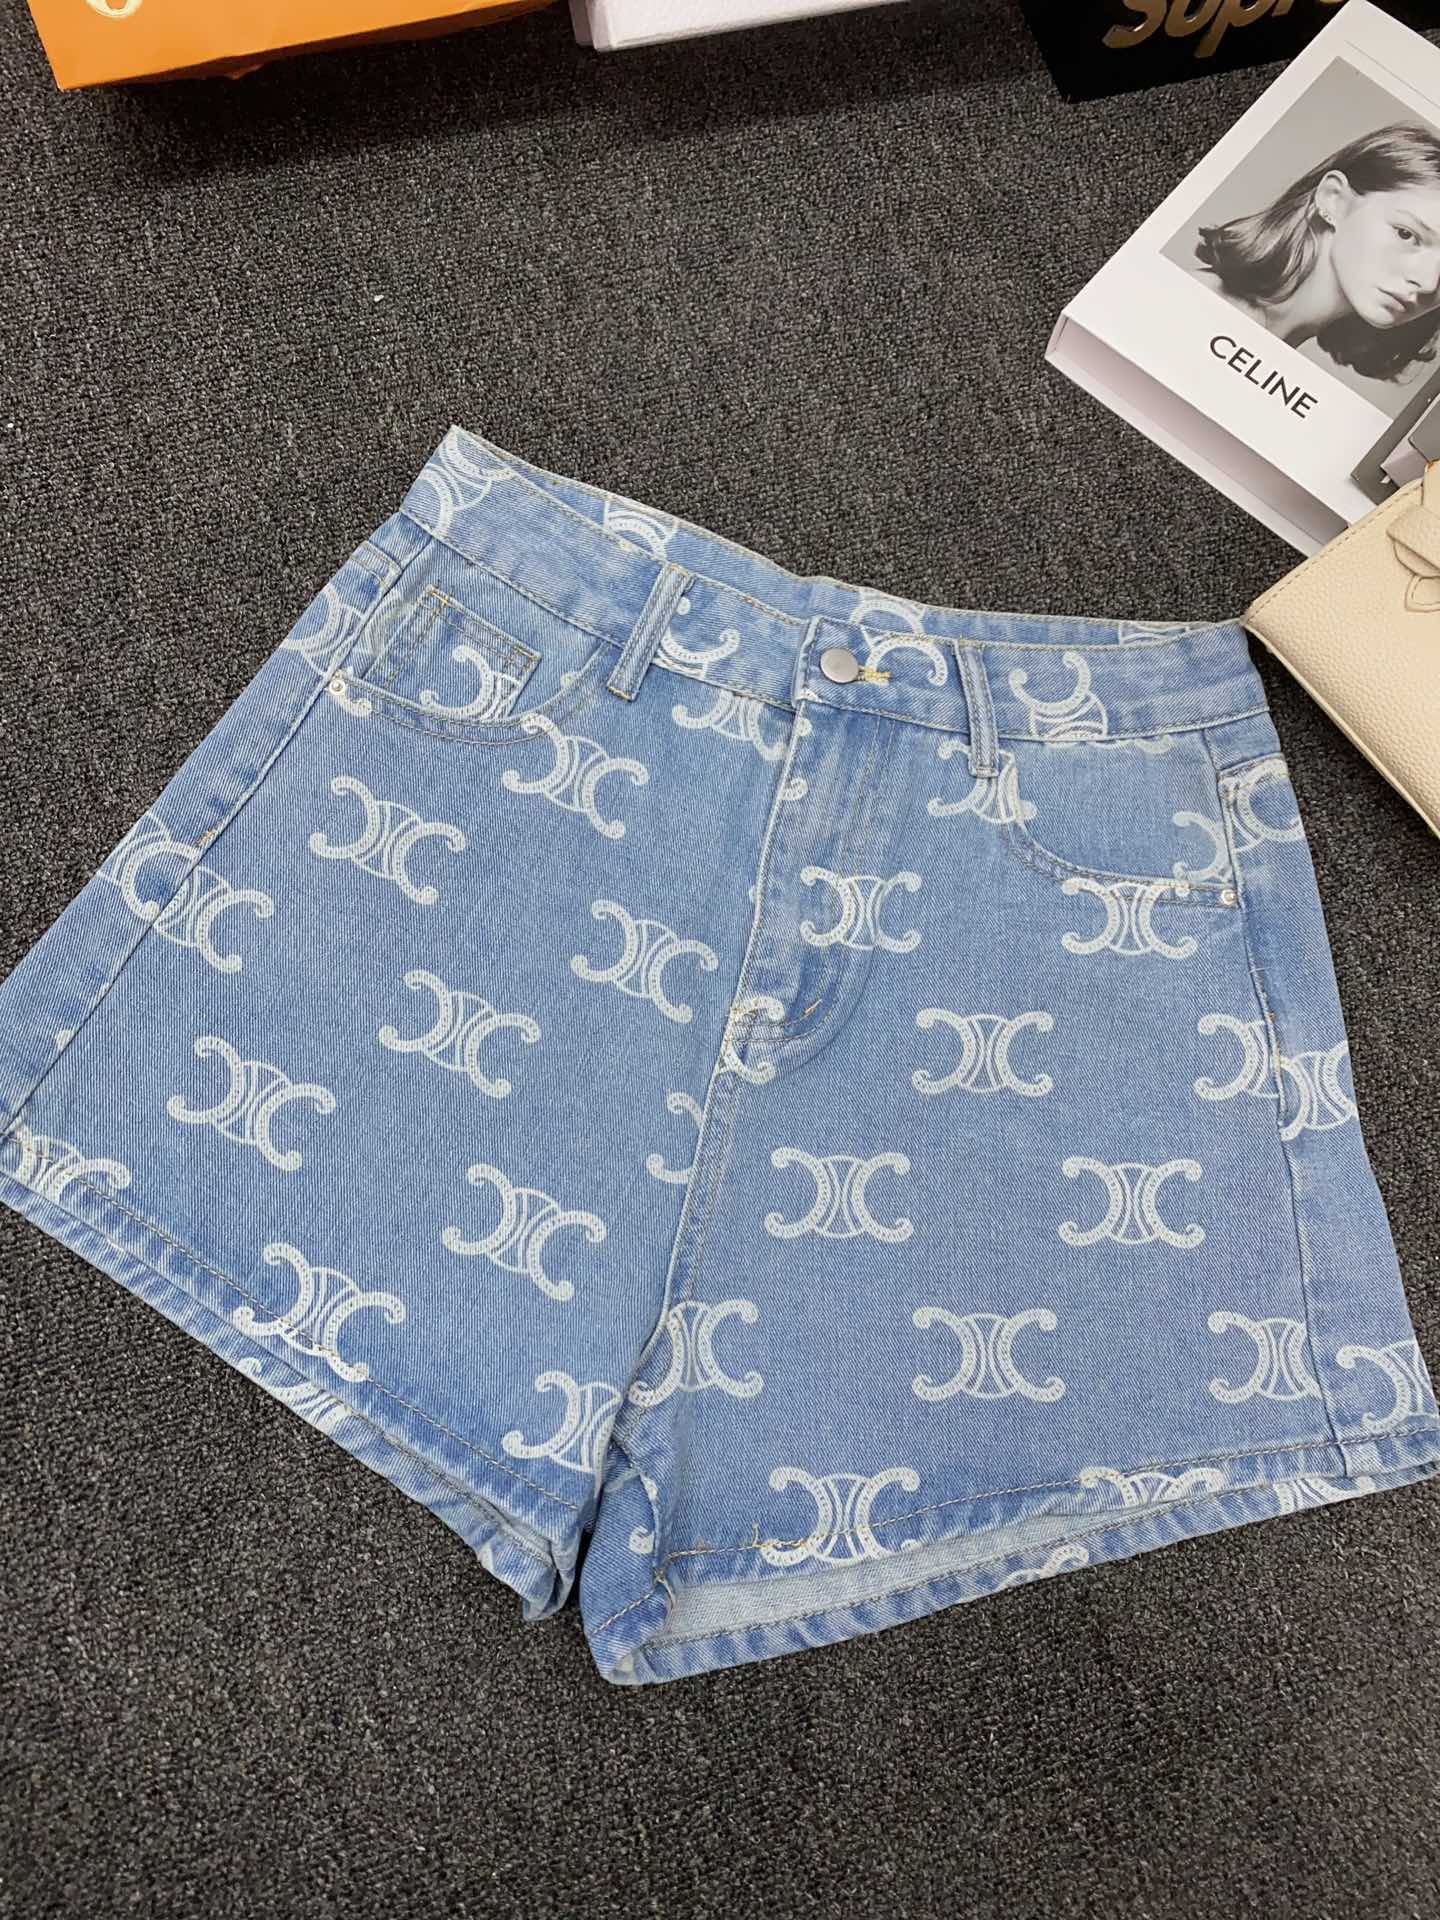 Celine Vêtements Jeans Shorts Bleu profond clair Imprimé Série d’été Peu importe